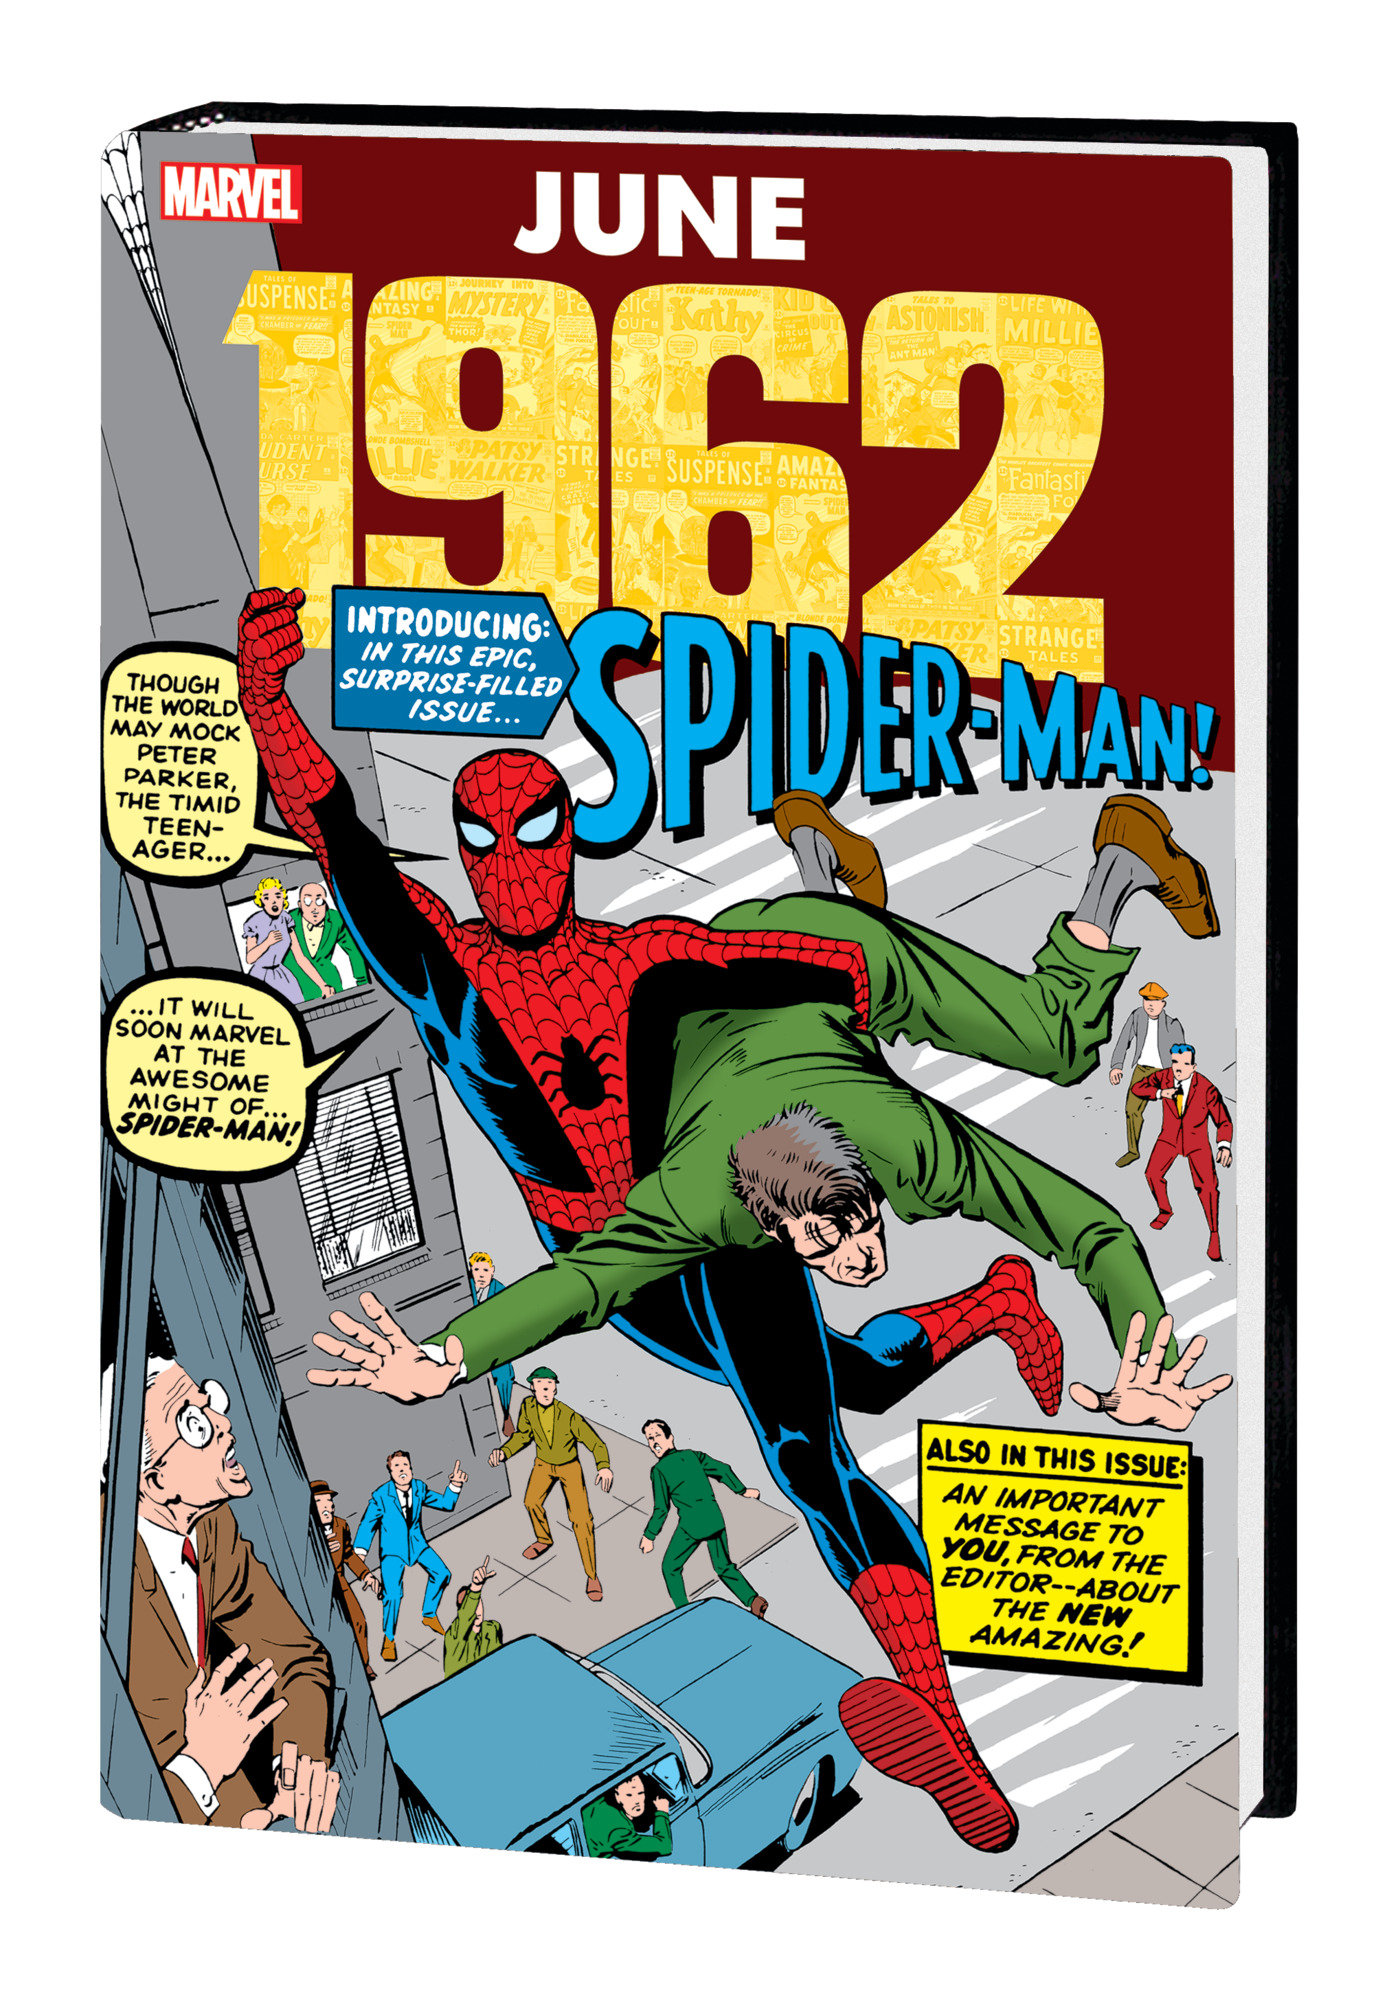 Marvel June 1962 Omnibus Hardcover Ditko Direct Market Variant